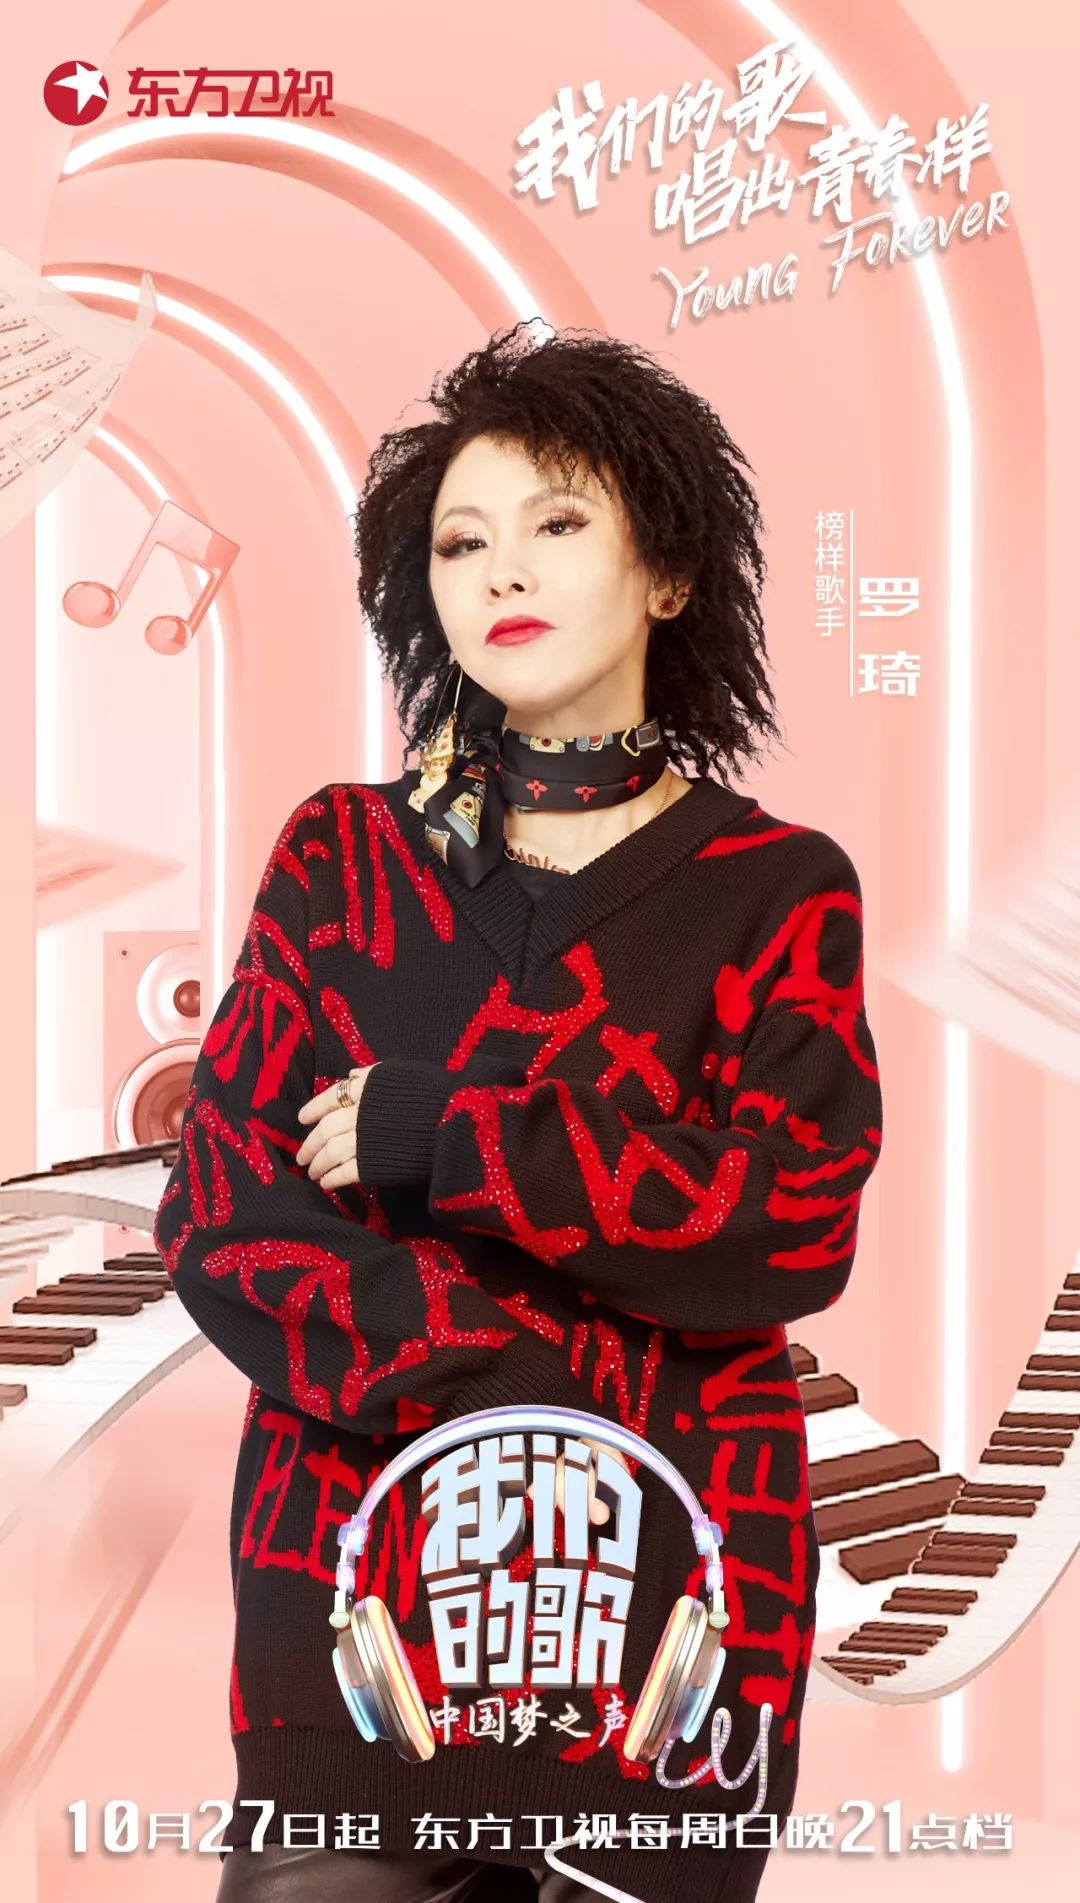 1991年出道,罗琦作为指南针乐队的主唱,曾被称为中国摇滚乐第一女嗓